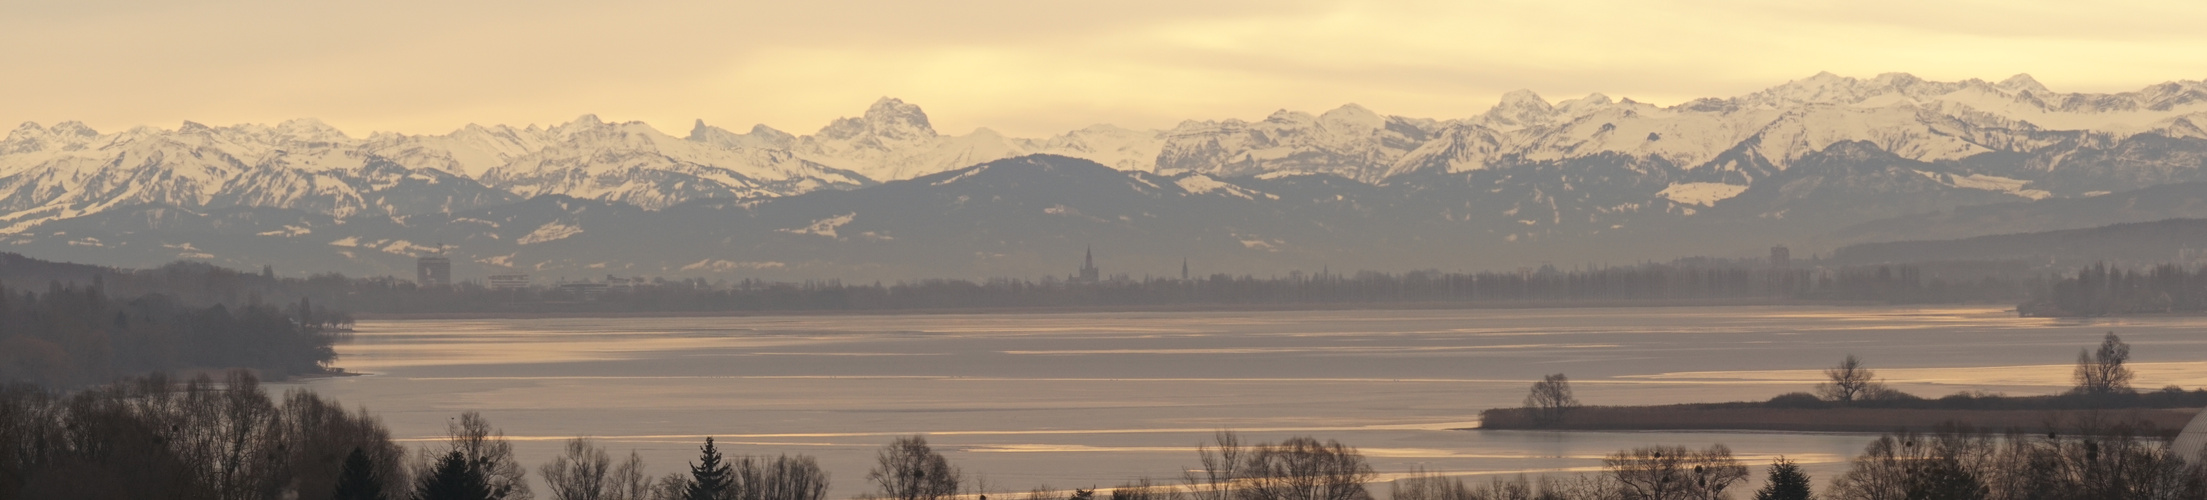 Konstanz und die Alpen